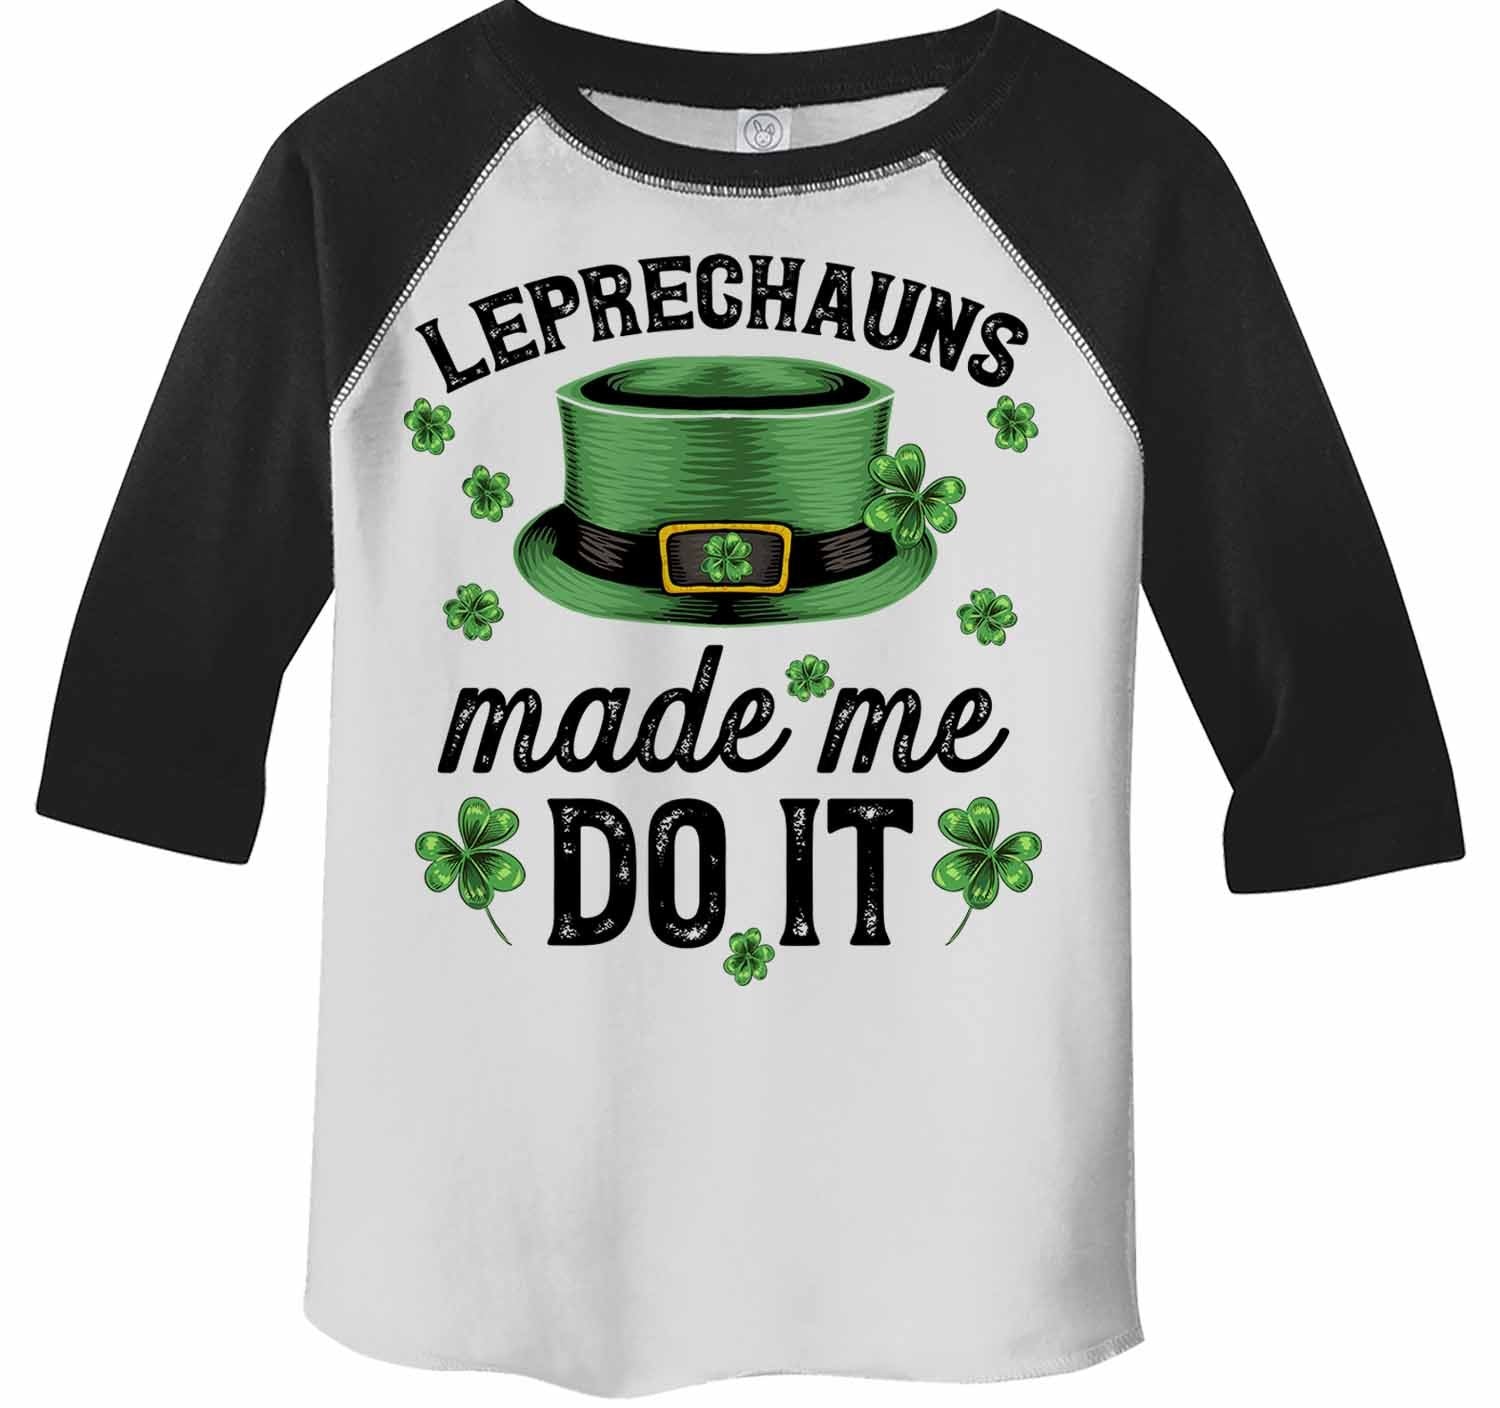 the leprechauns made me do it shirt